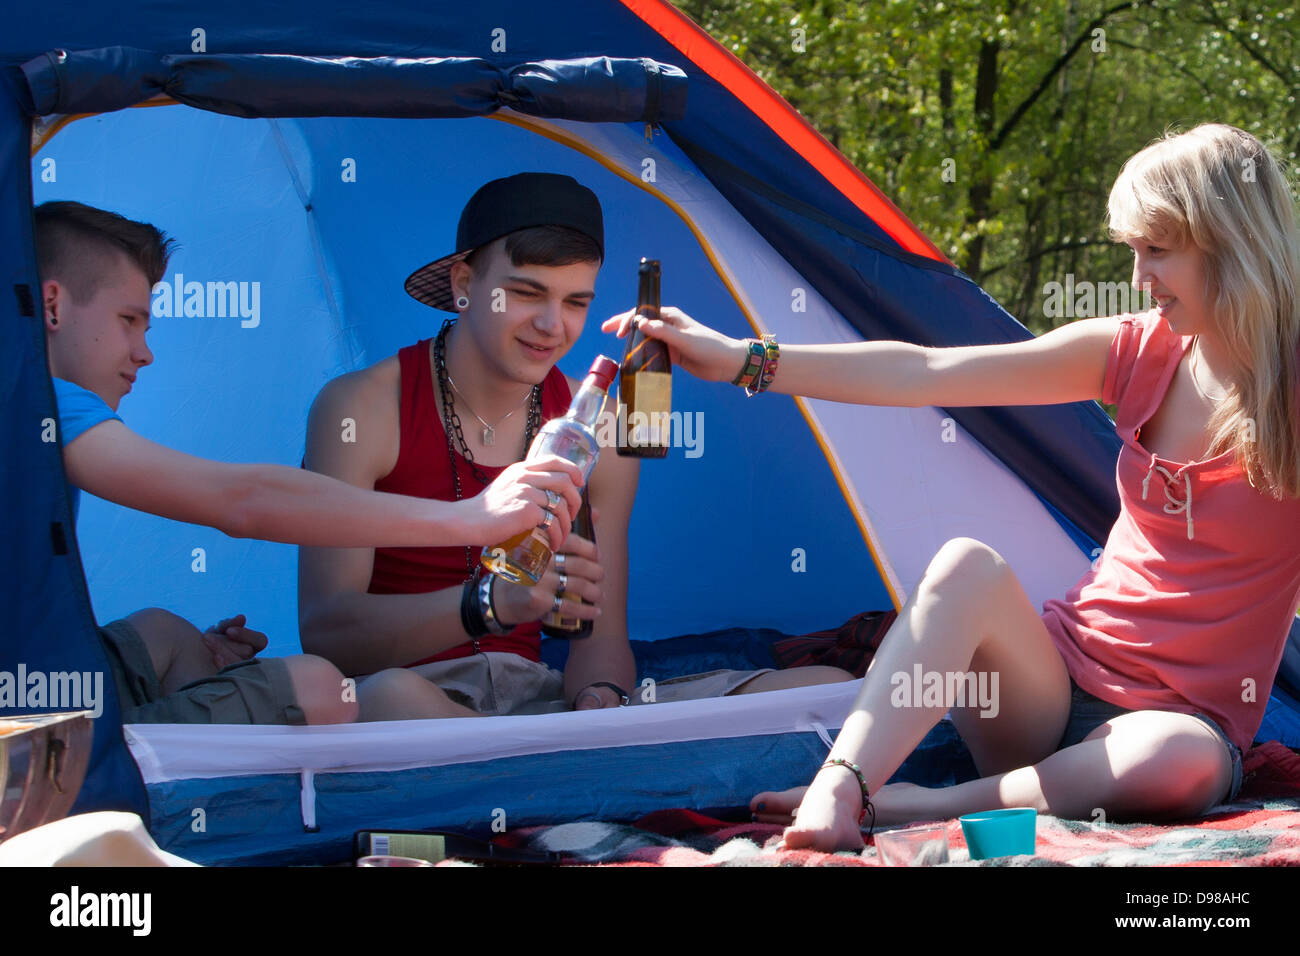 Les jeunes adolescents s'amuse sur un camping. Banque D'Images